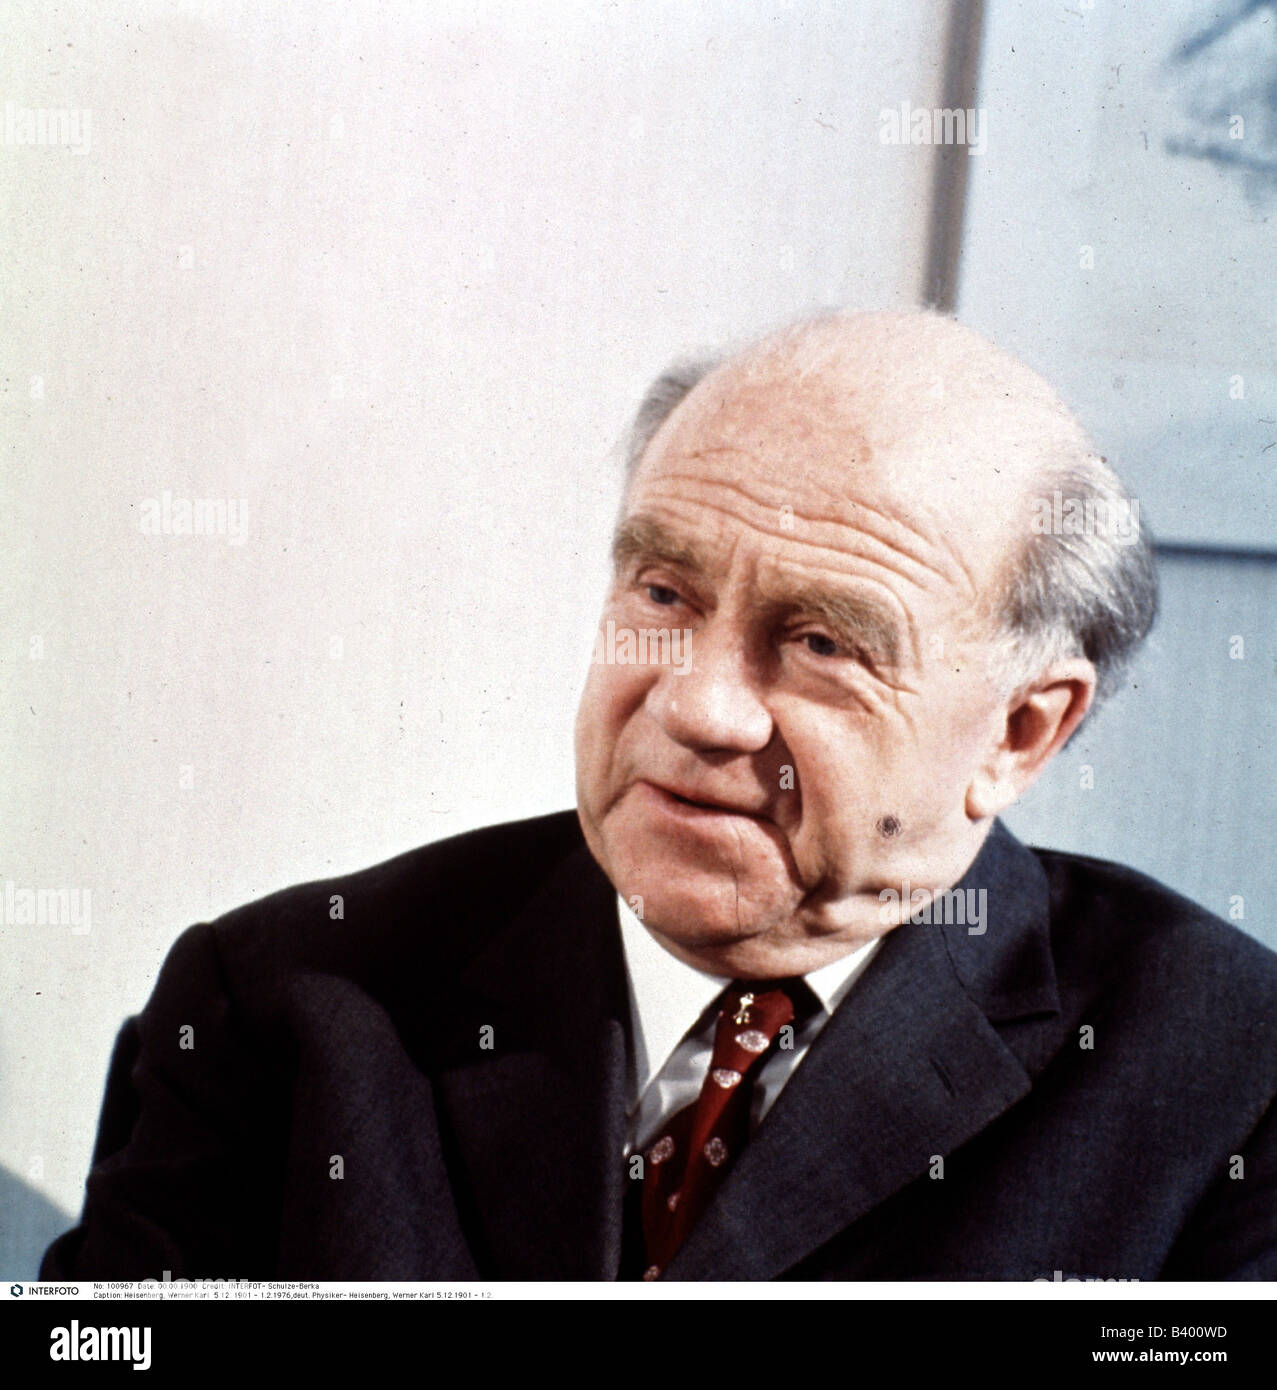 Heisenberg, Werner Karl, 5.12.1901 - 1.2.1976, German physicist, portrait, 1972, Stock Photo